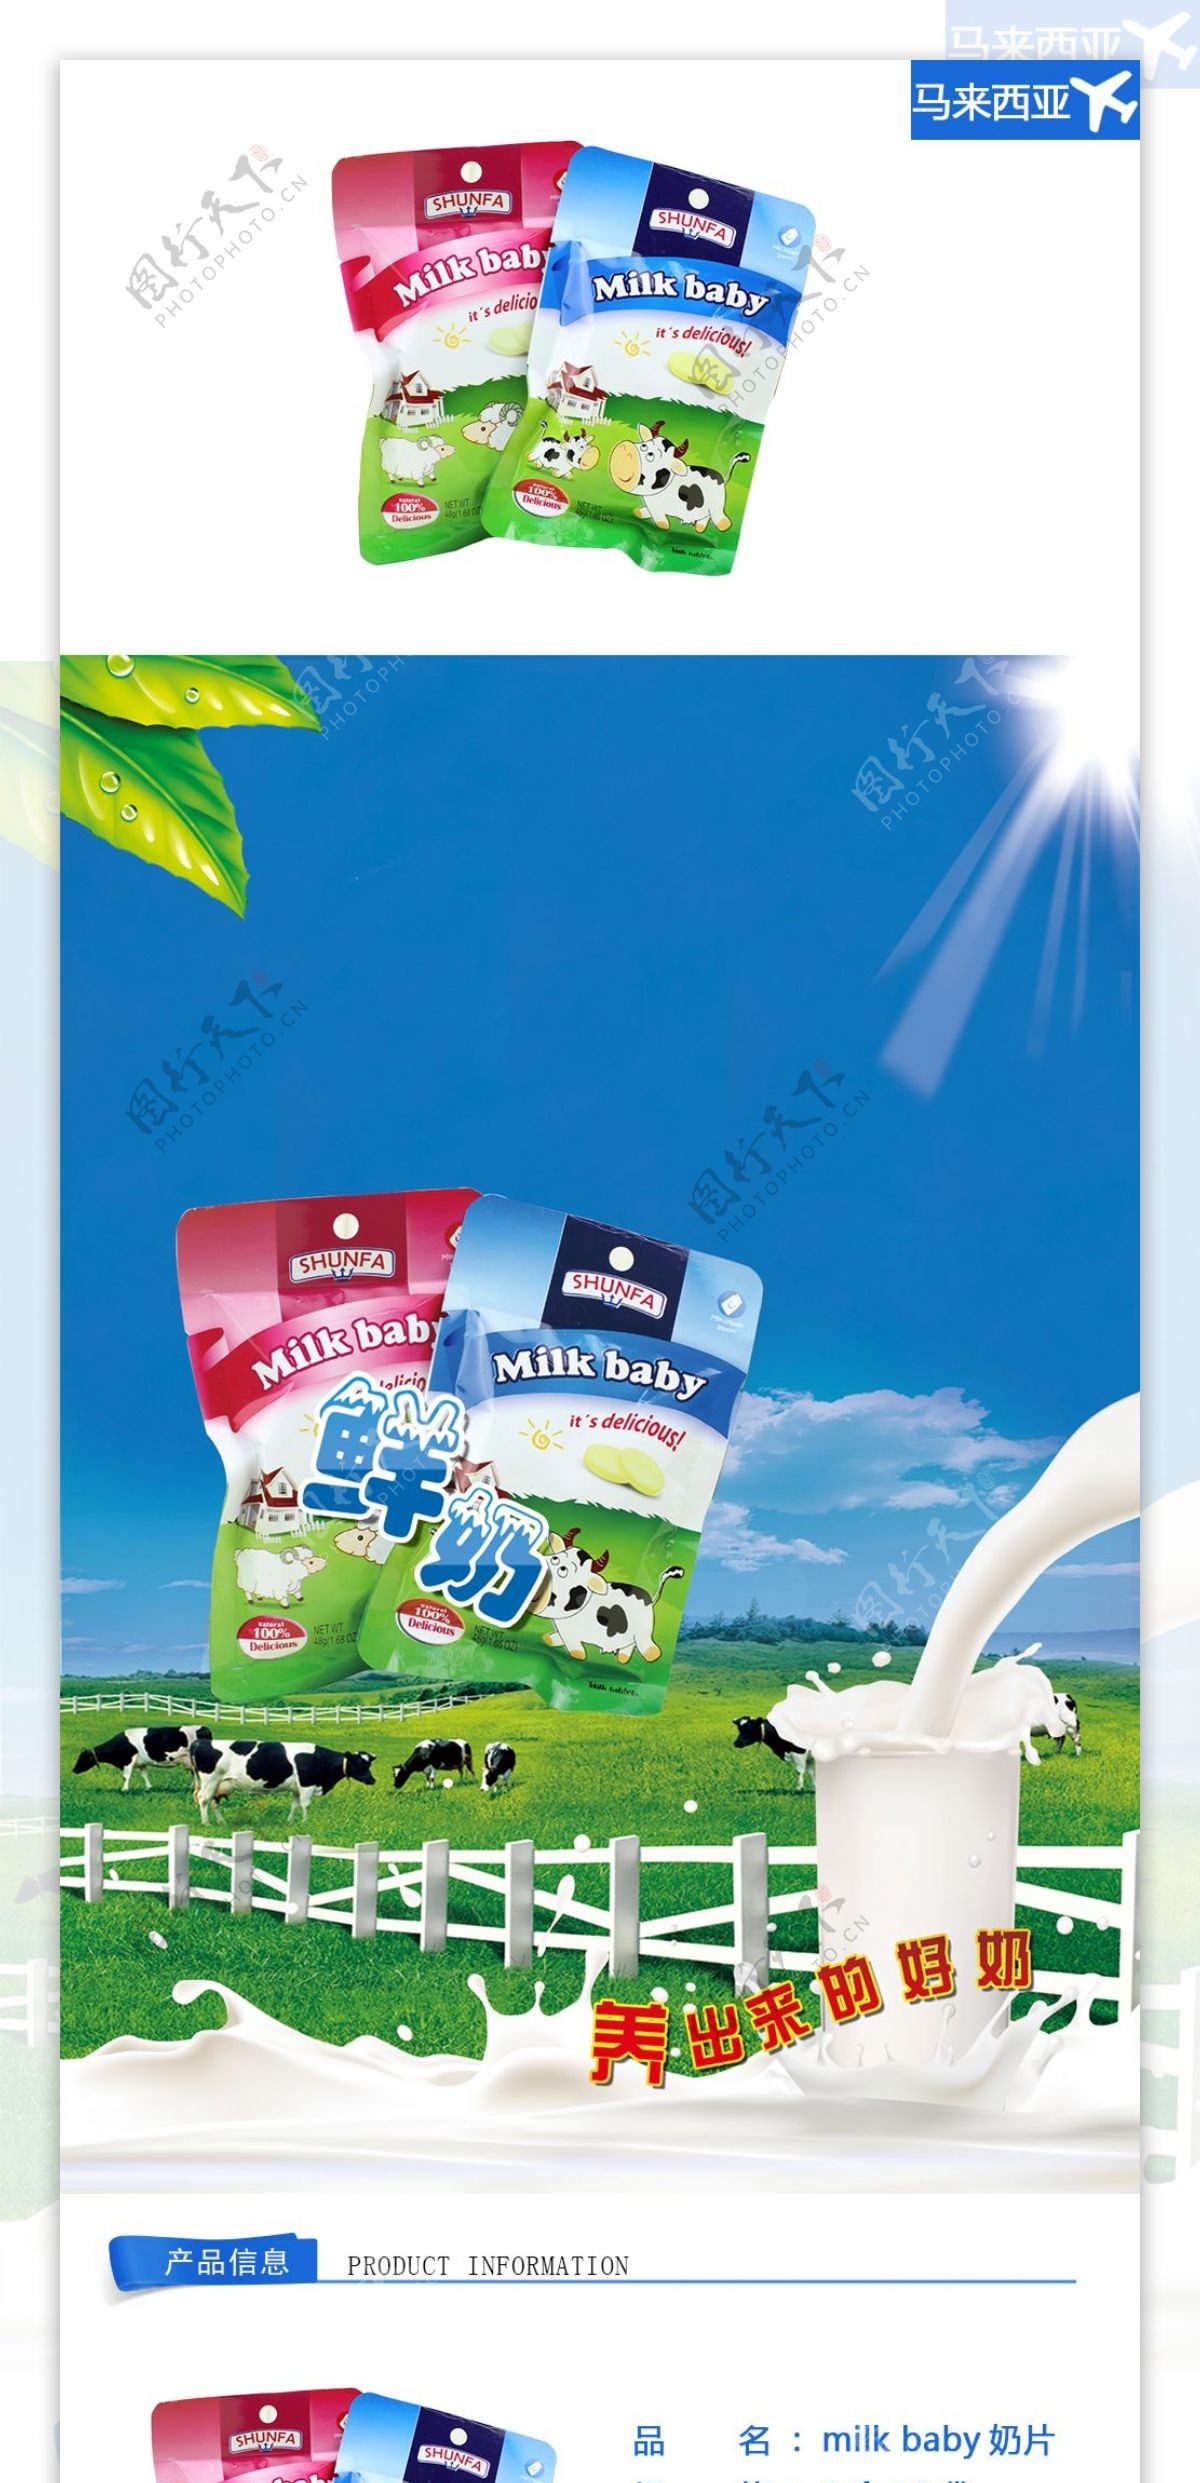 milkbaby奶片移动设备终端网页设计